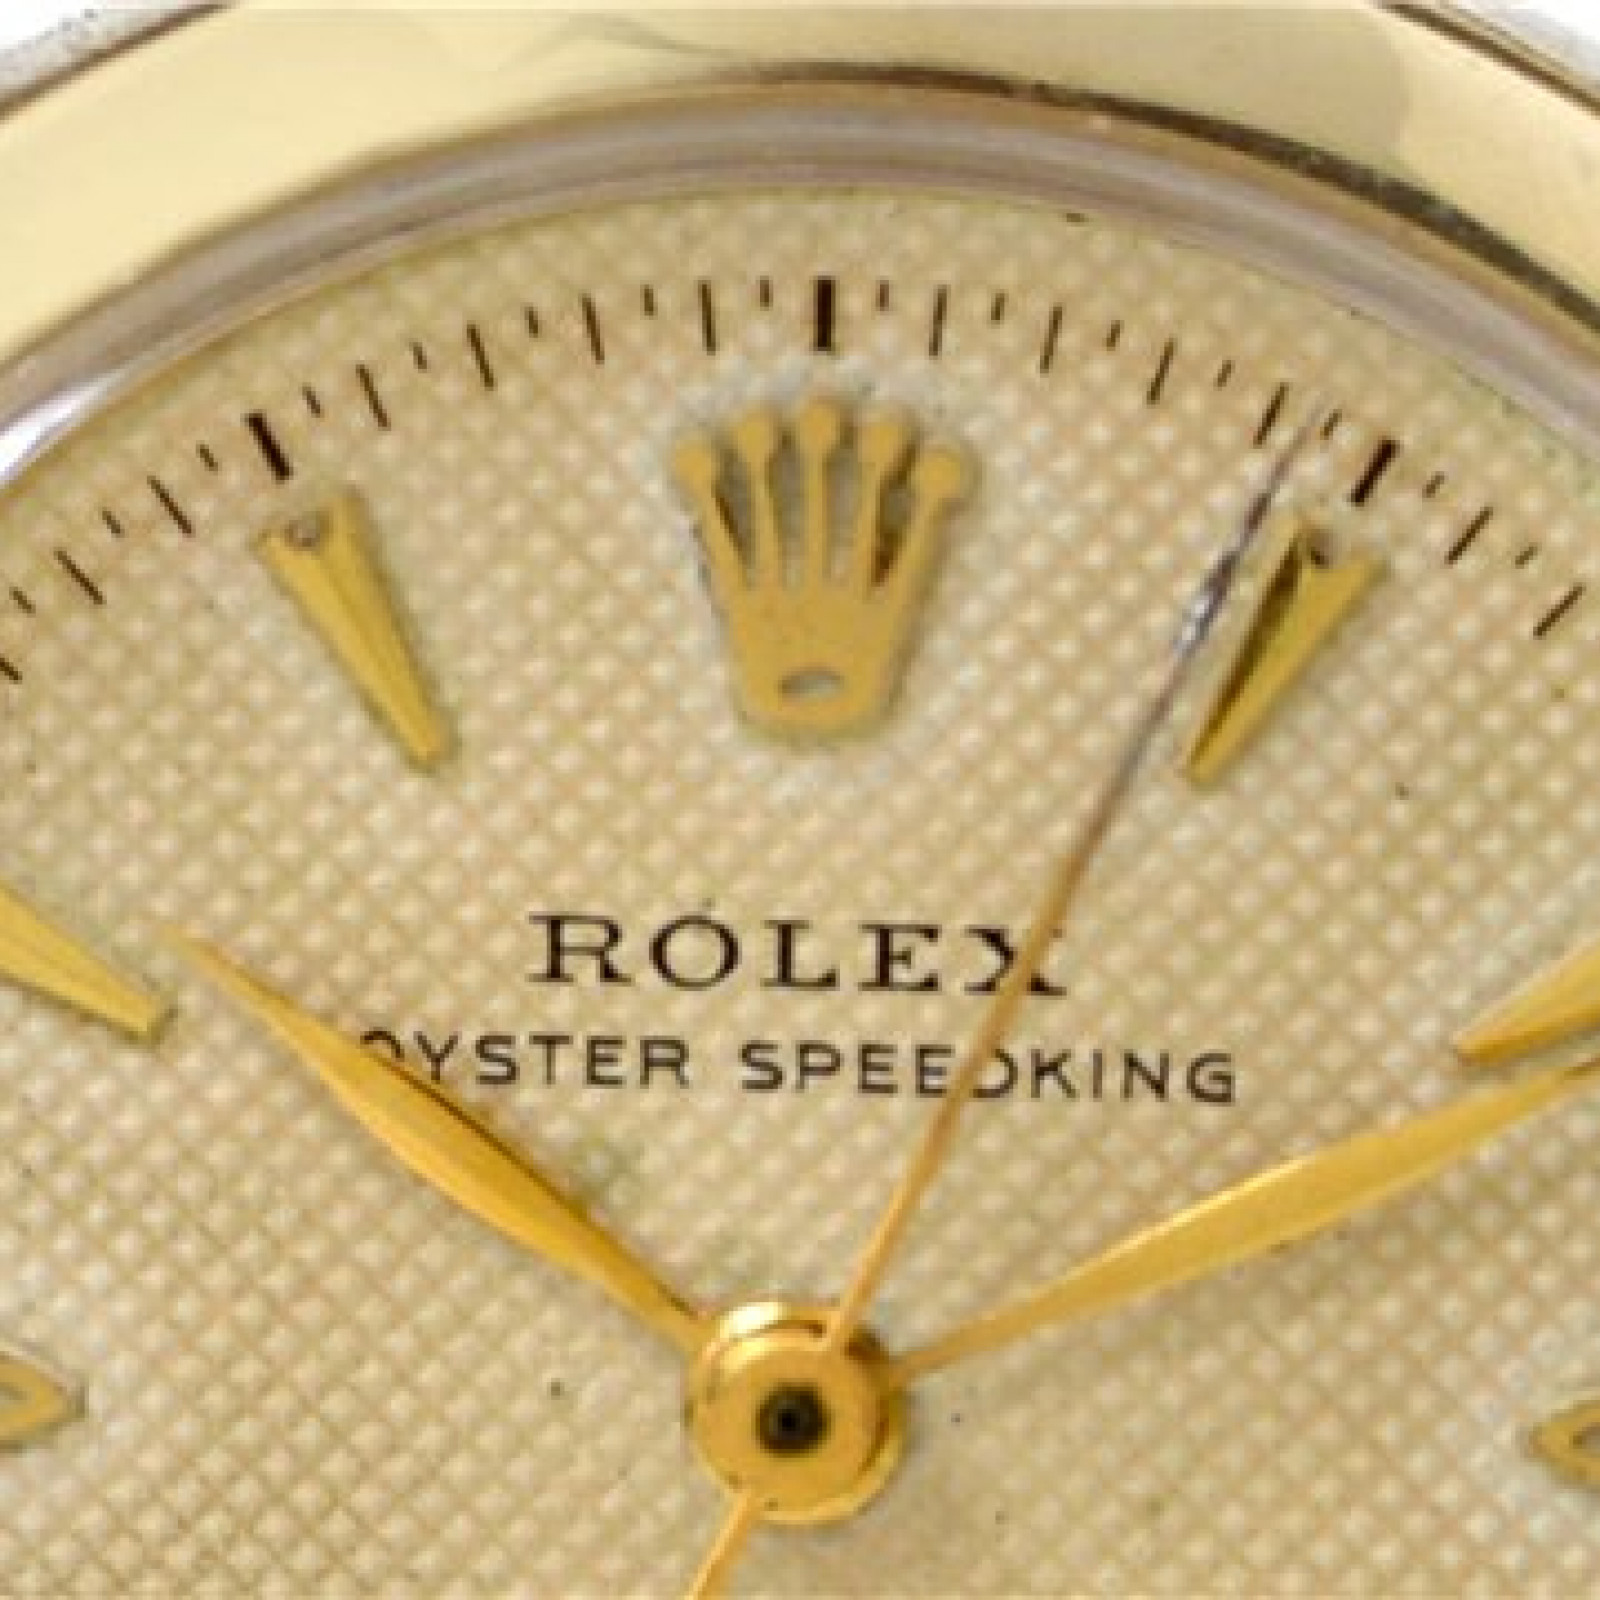 Vintage Rolex Oyster Speedking 6020